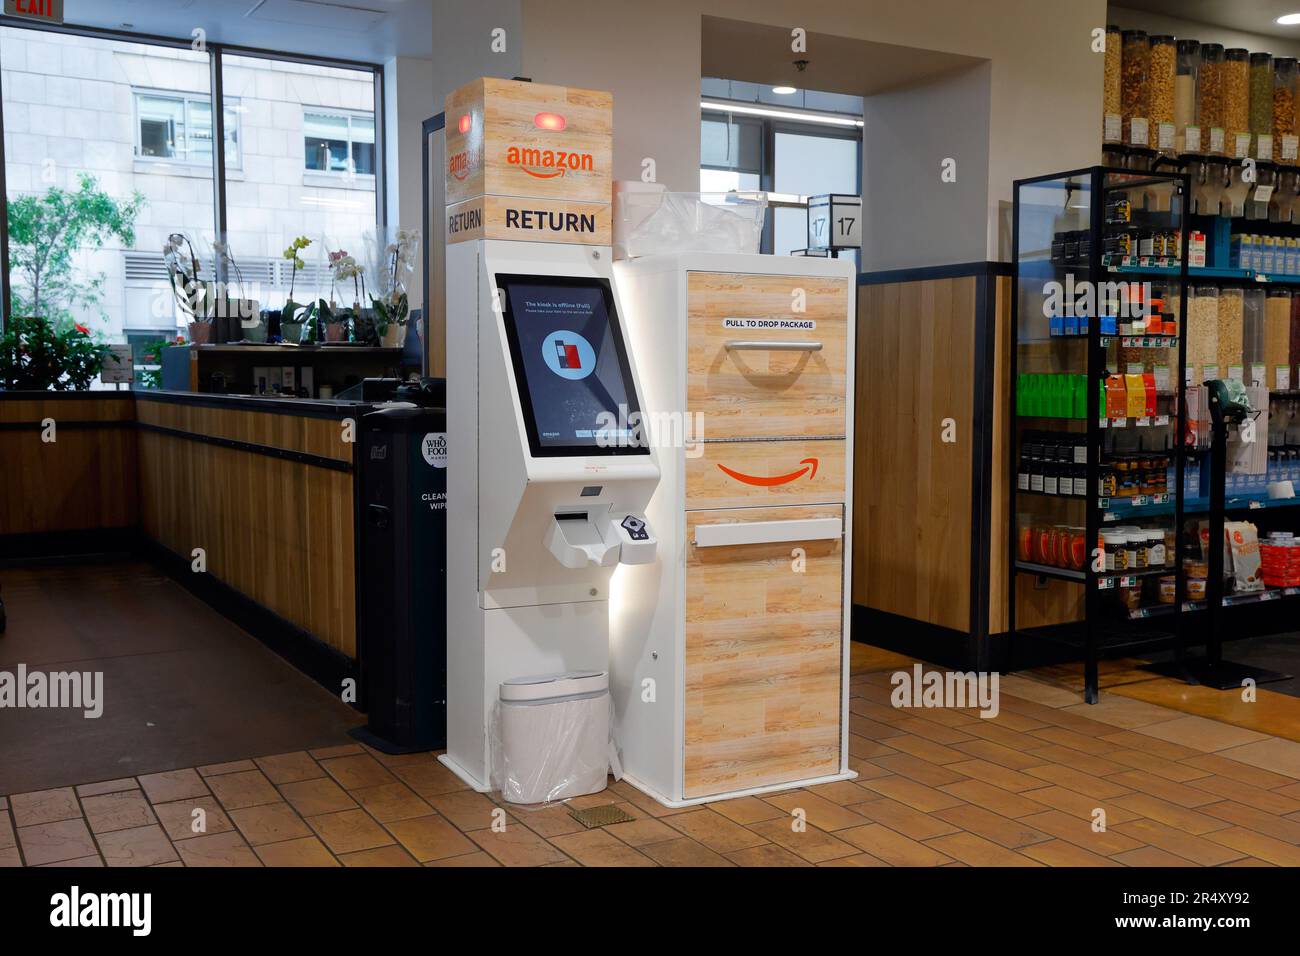 Ein automatisierter Amazon Return Kiosk auf einem Whole Foods Market für die Abgabe von Rücksendungen von Artikeln, die beim Online-Händler gekauft wurden. Stockfoto